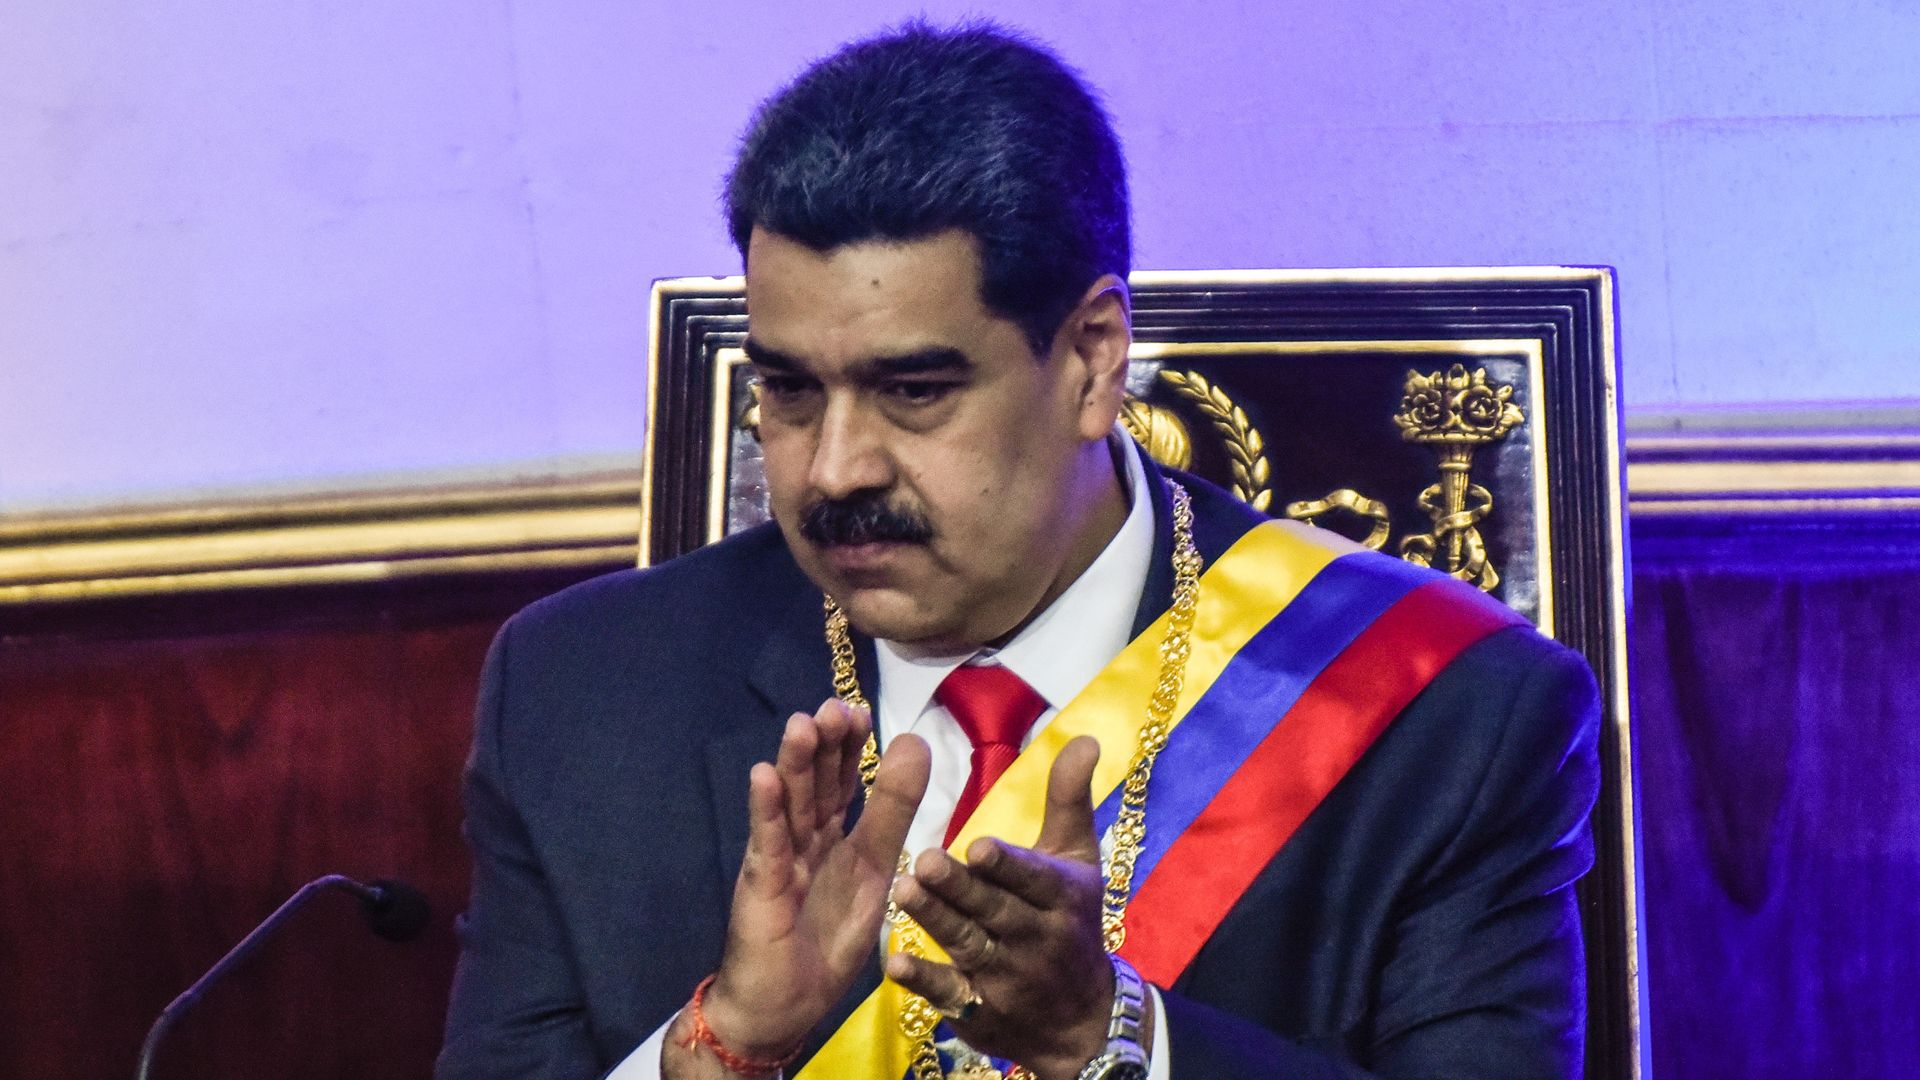 Venezuelan President Maduro